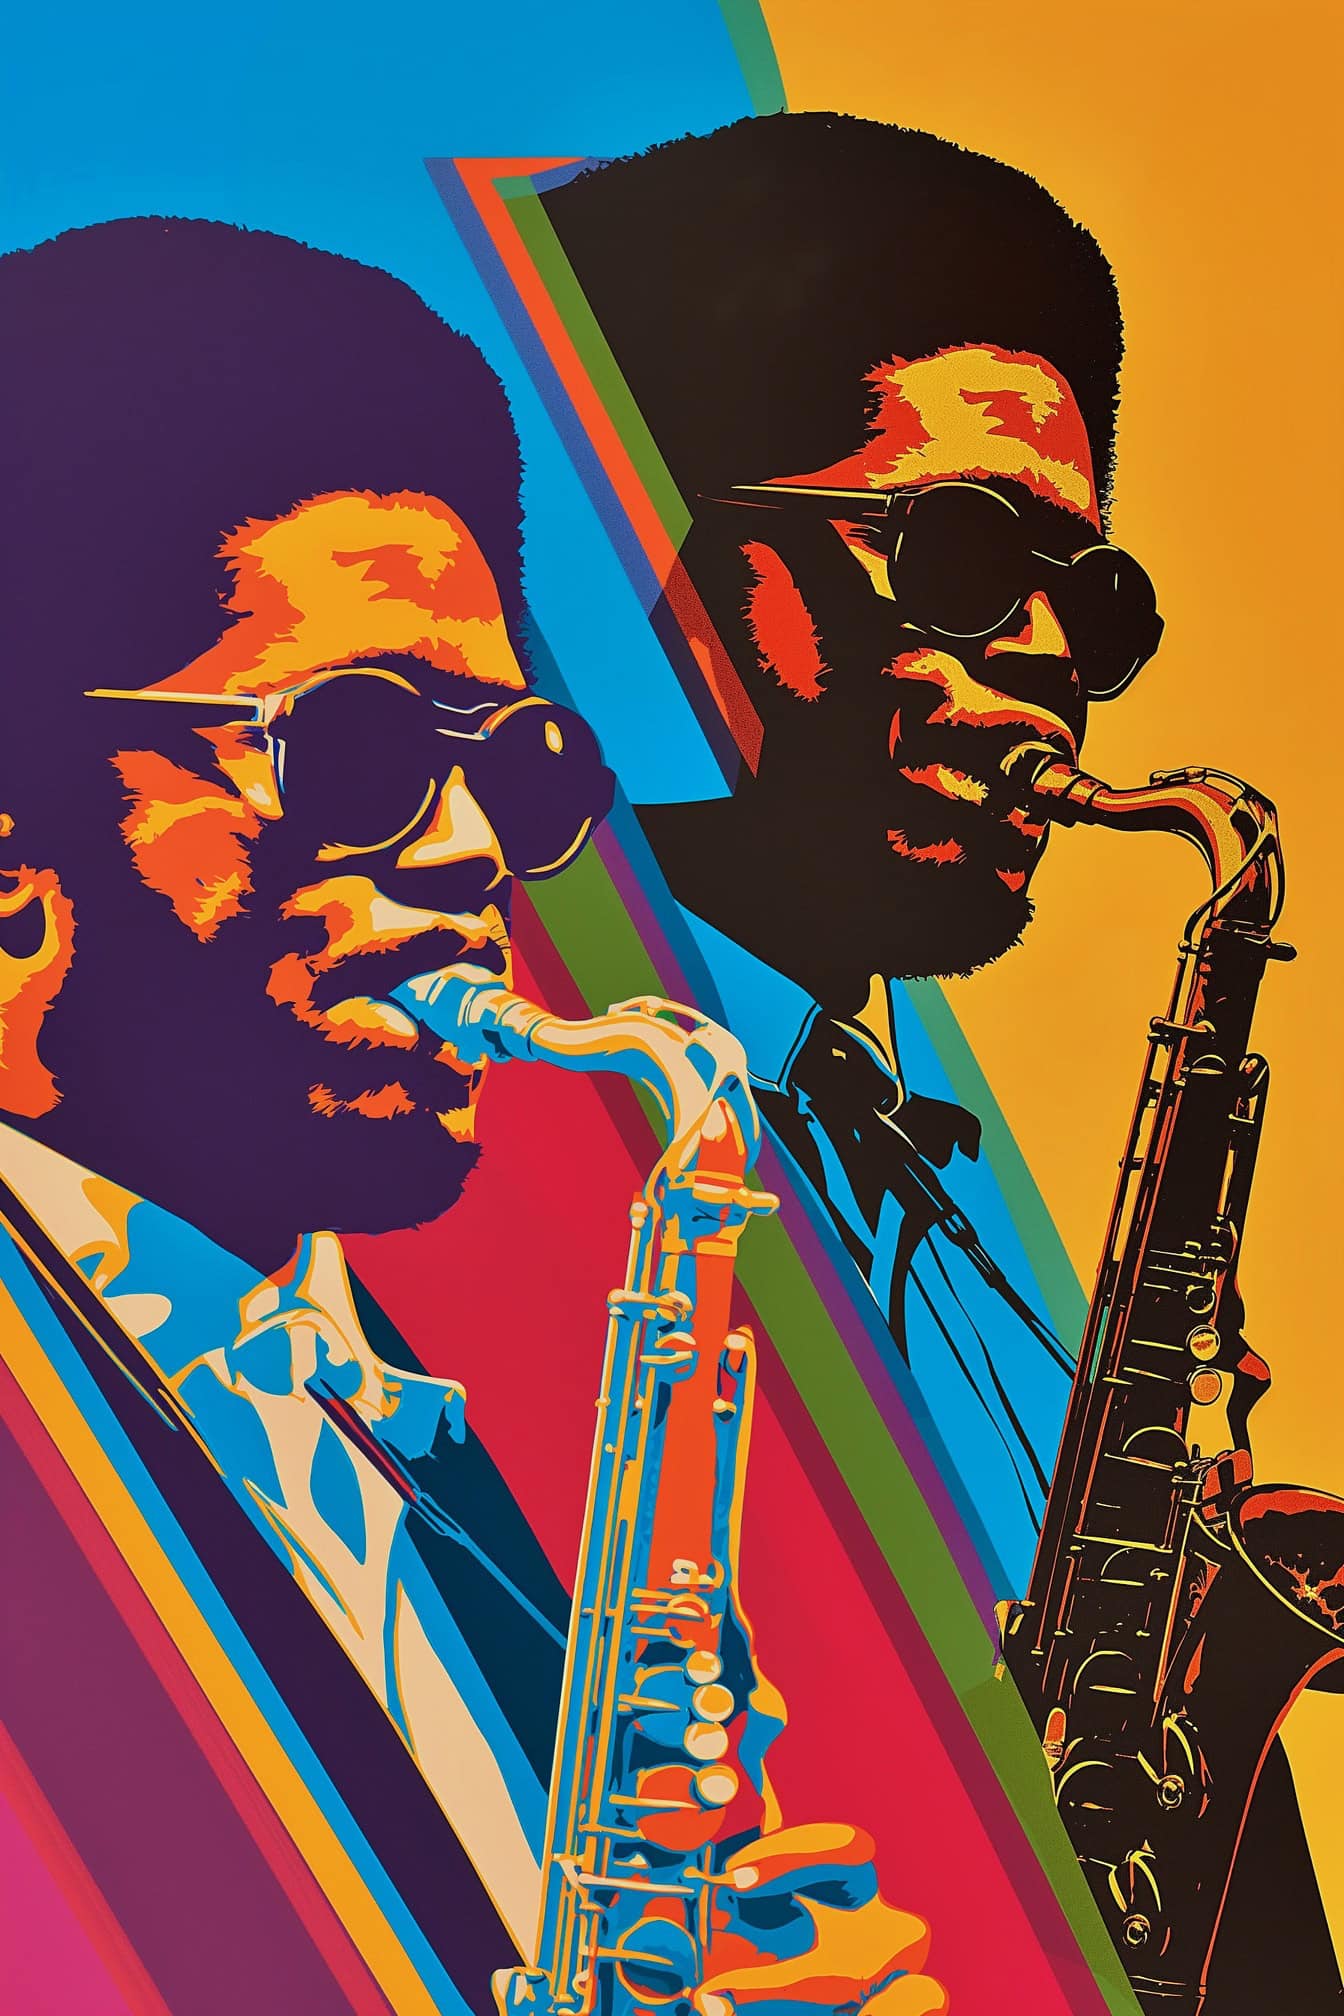 색소폰을 연주하는 아프리카계 미국인 음악가의 복고풍 70년대 스타일의 포스터